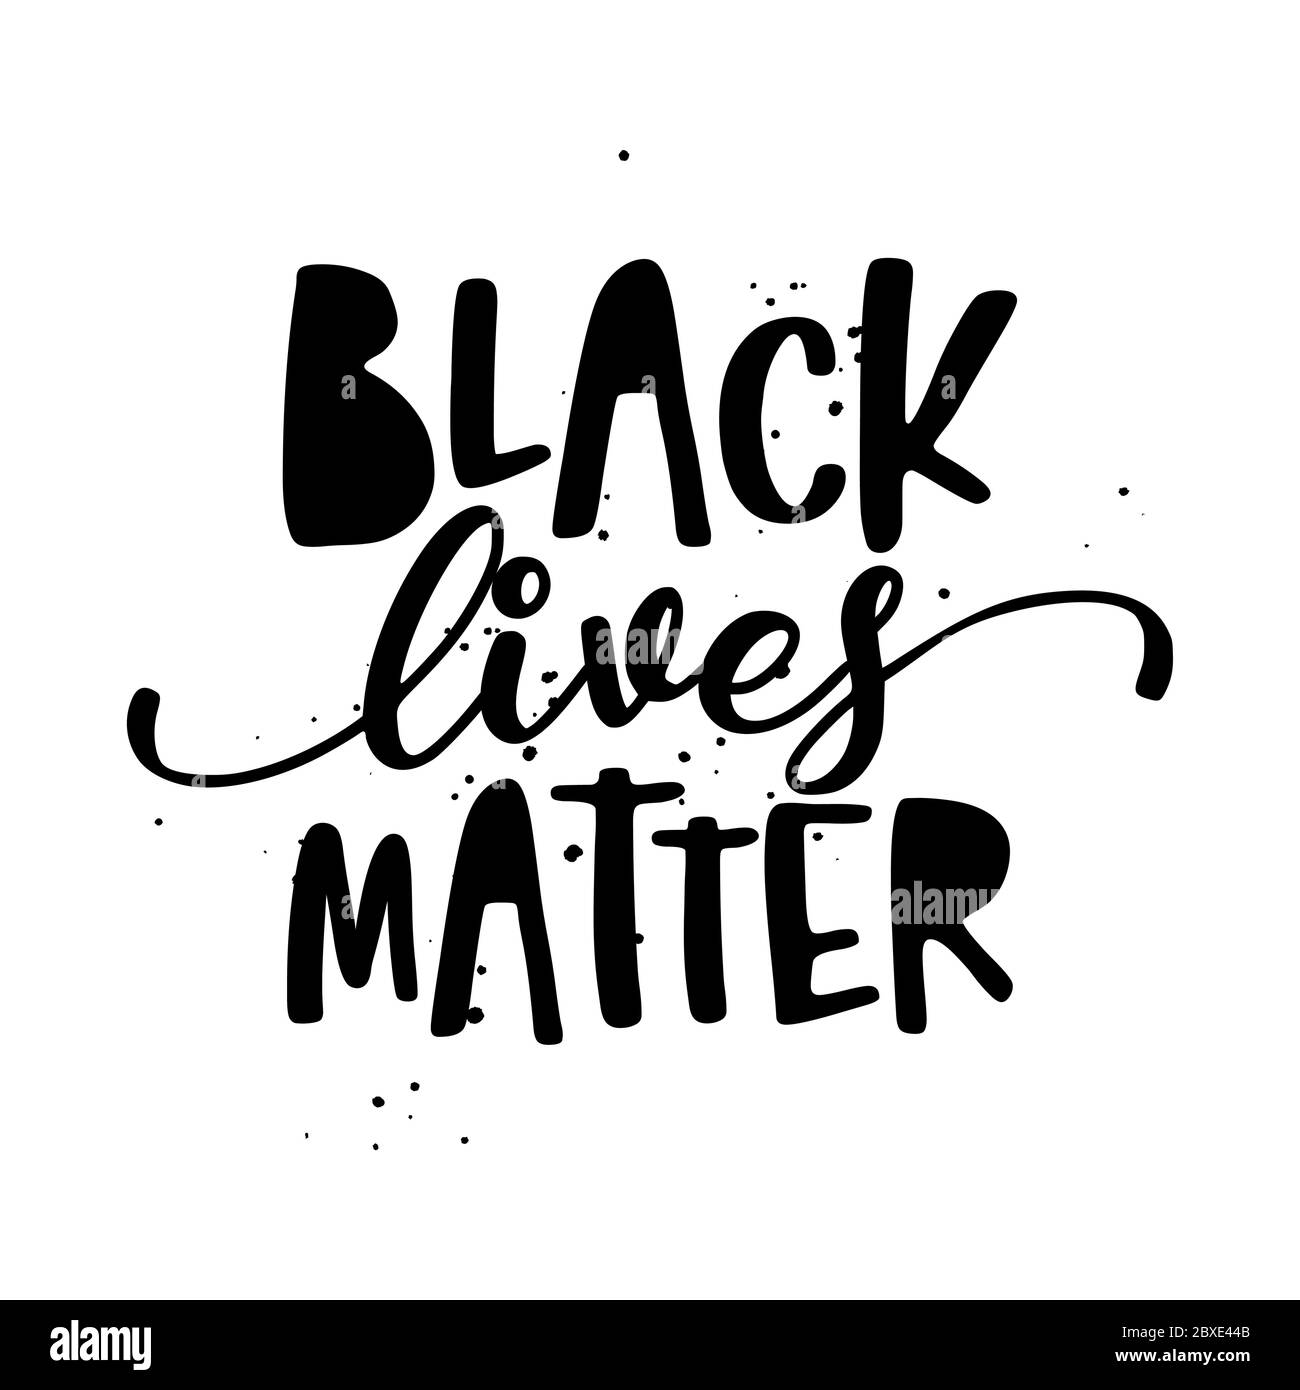 Black Lives Matter - stoppen Rassismus, schöne Slogan gegen Diskriminierung. Moderne Kalligraphie mit Stoppschild. Gut für Schrottbuchungen, Poster, Textilien, Stock Vektor